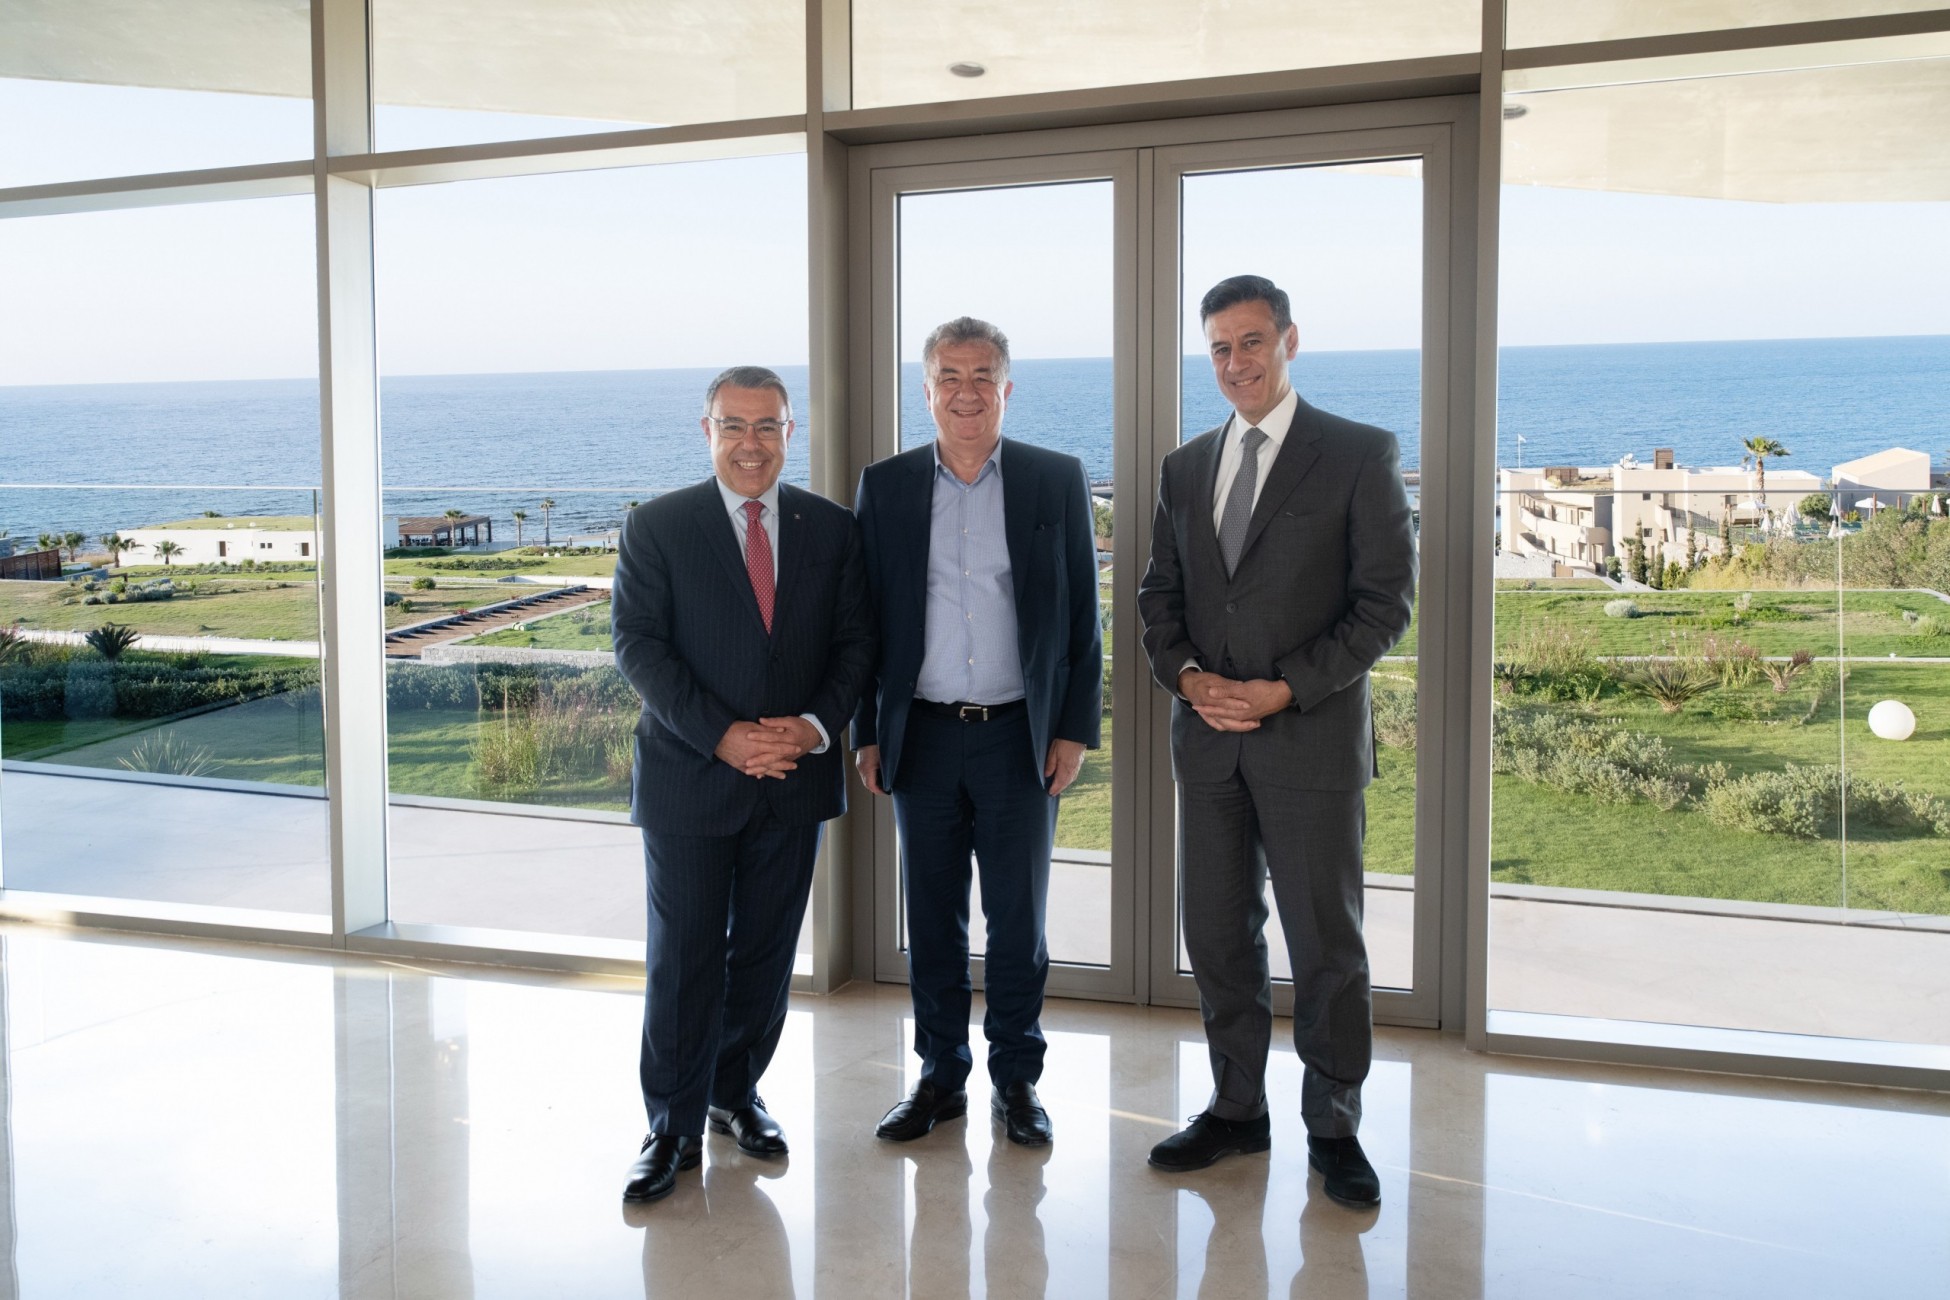 Ψάλτης (Alpha Bank): Συνάντηση με τον Περιφερειάρχη Κρήτης Σταύρο Αρναουτάκη – Τα θέματα που συζητήθηκαν